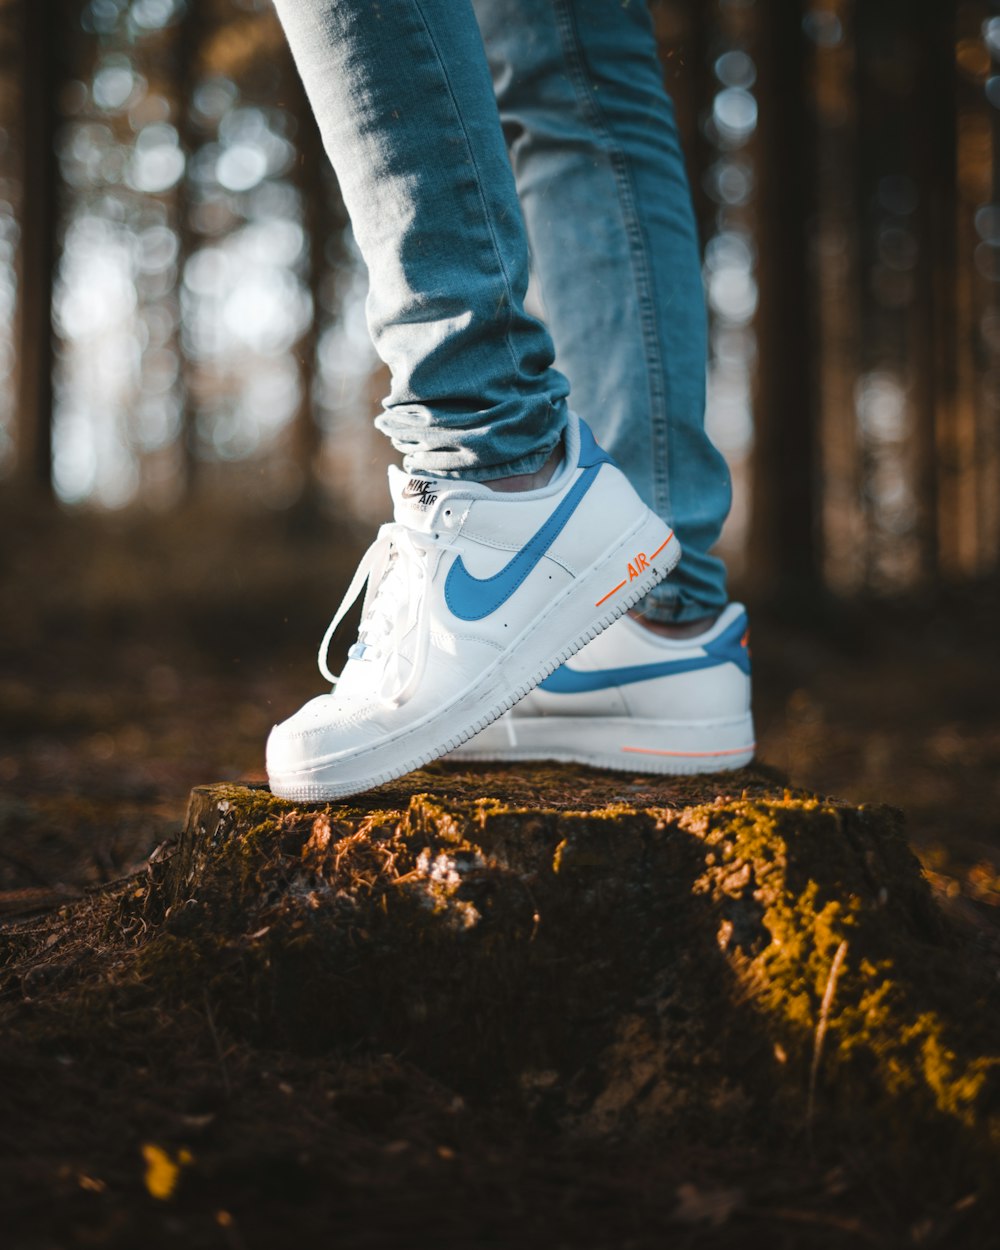 Pericia emparedado sensación Foto persona con jeans azules y zapatos Nike Air Max blancos parados en un  pisotón de árboles – Imagen Nike gratis en Unsplash